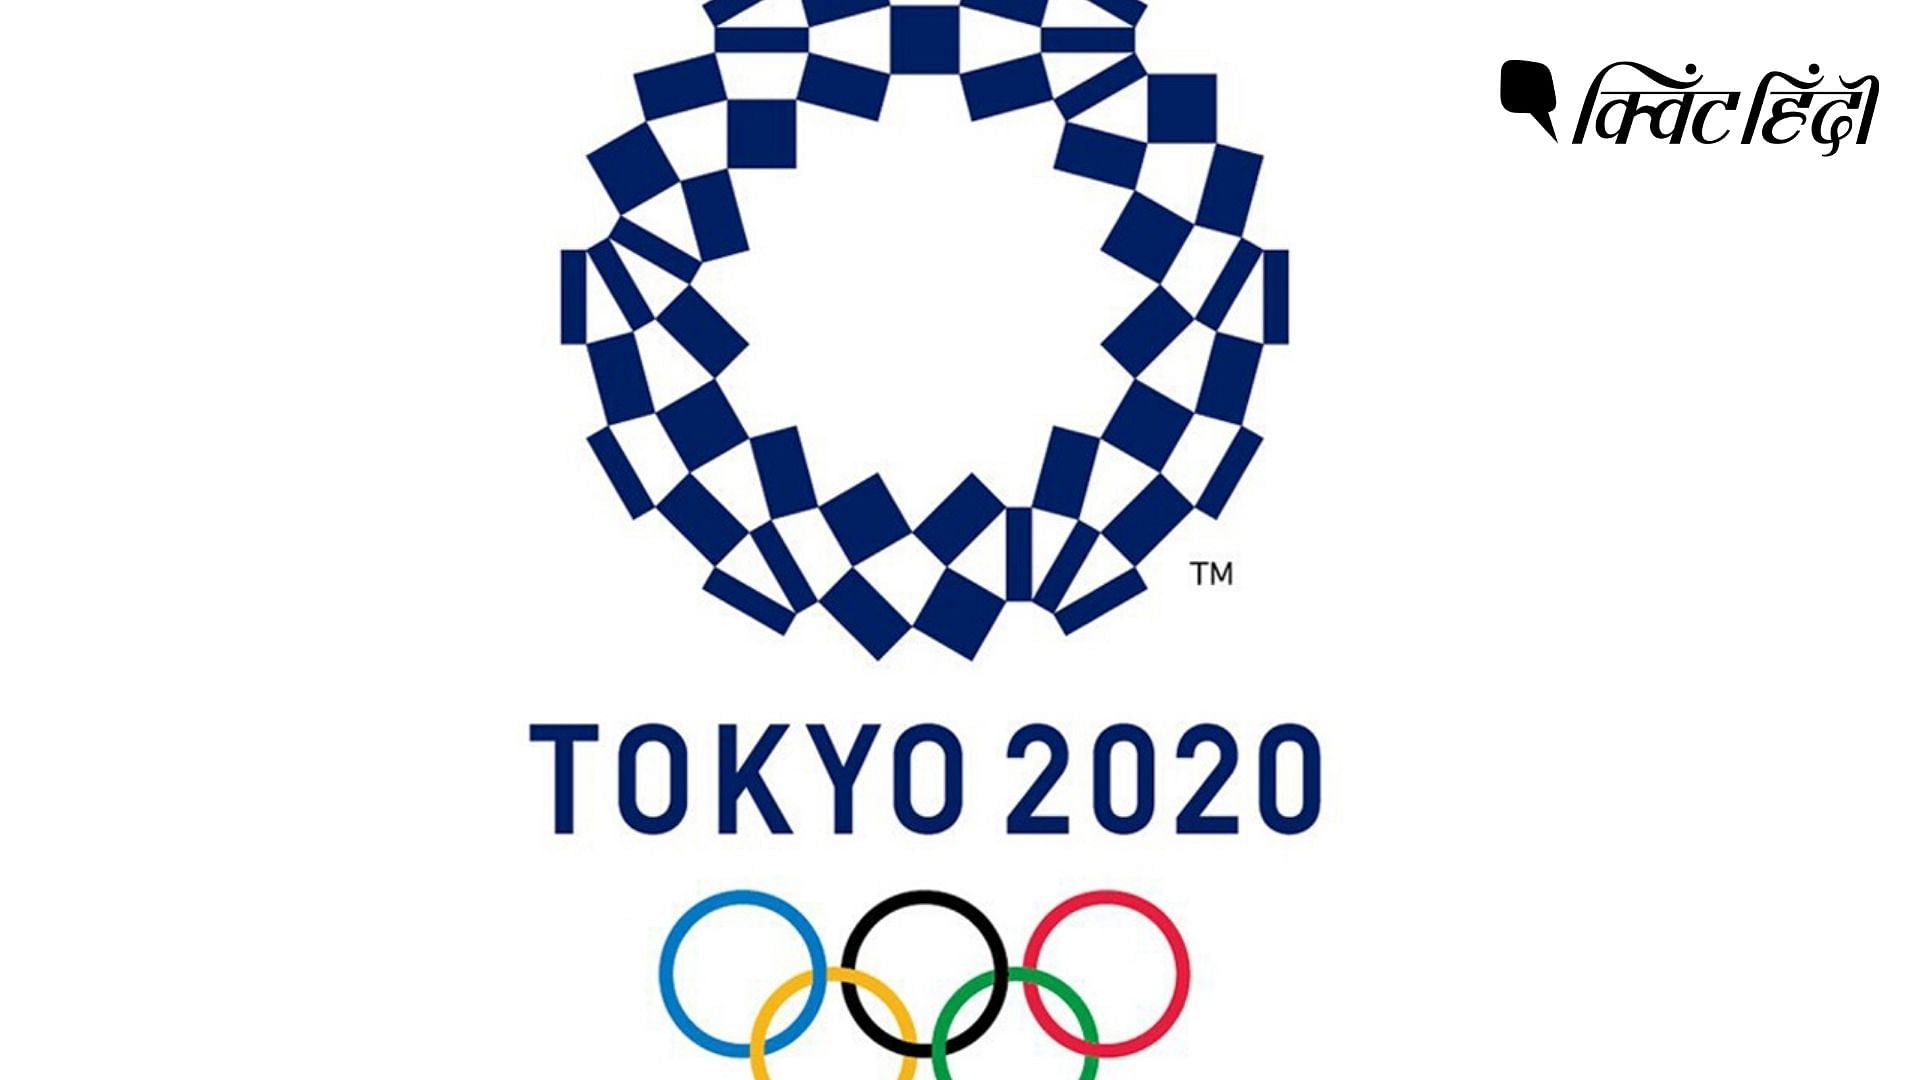 टोक्यो में इस साल 24 जुलाई से ओलंपिक खेलों का आयोजन होना है